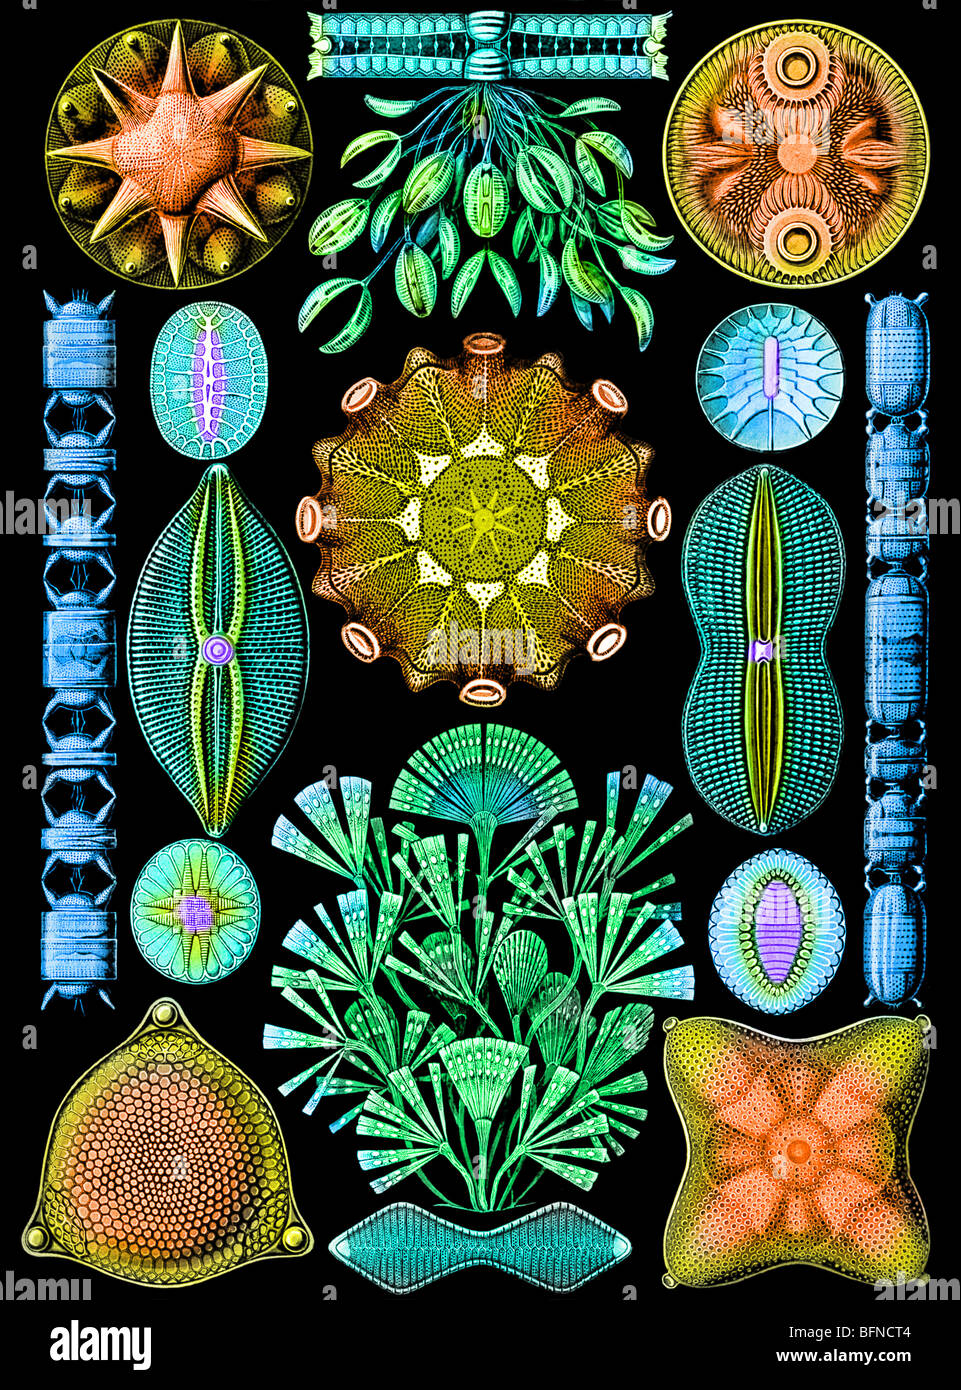 Le 84e à partir de la plaque d'Ernst Haeckel Kunstformen der Natur (1904), dépeignant les diatomées (Diatomea). Banque D'Images